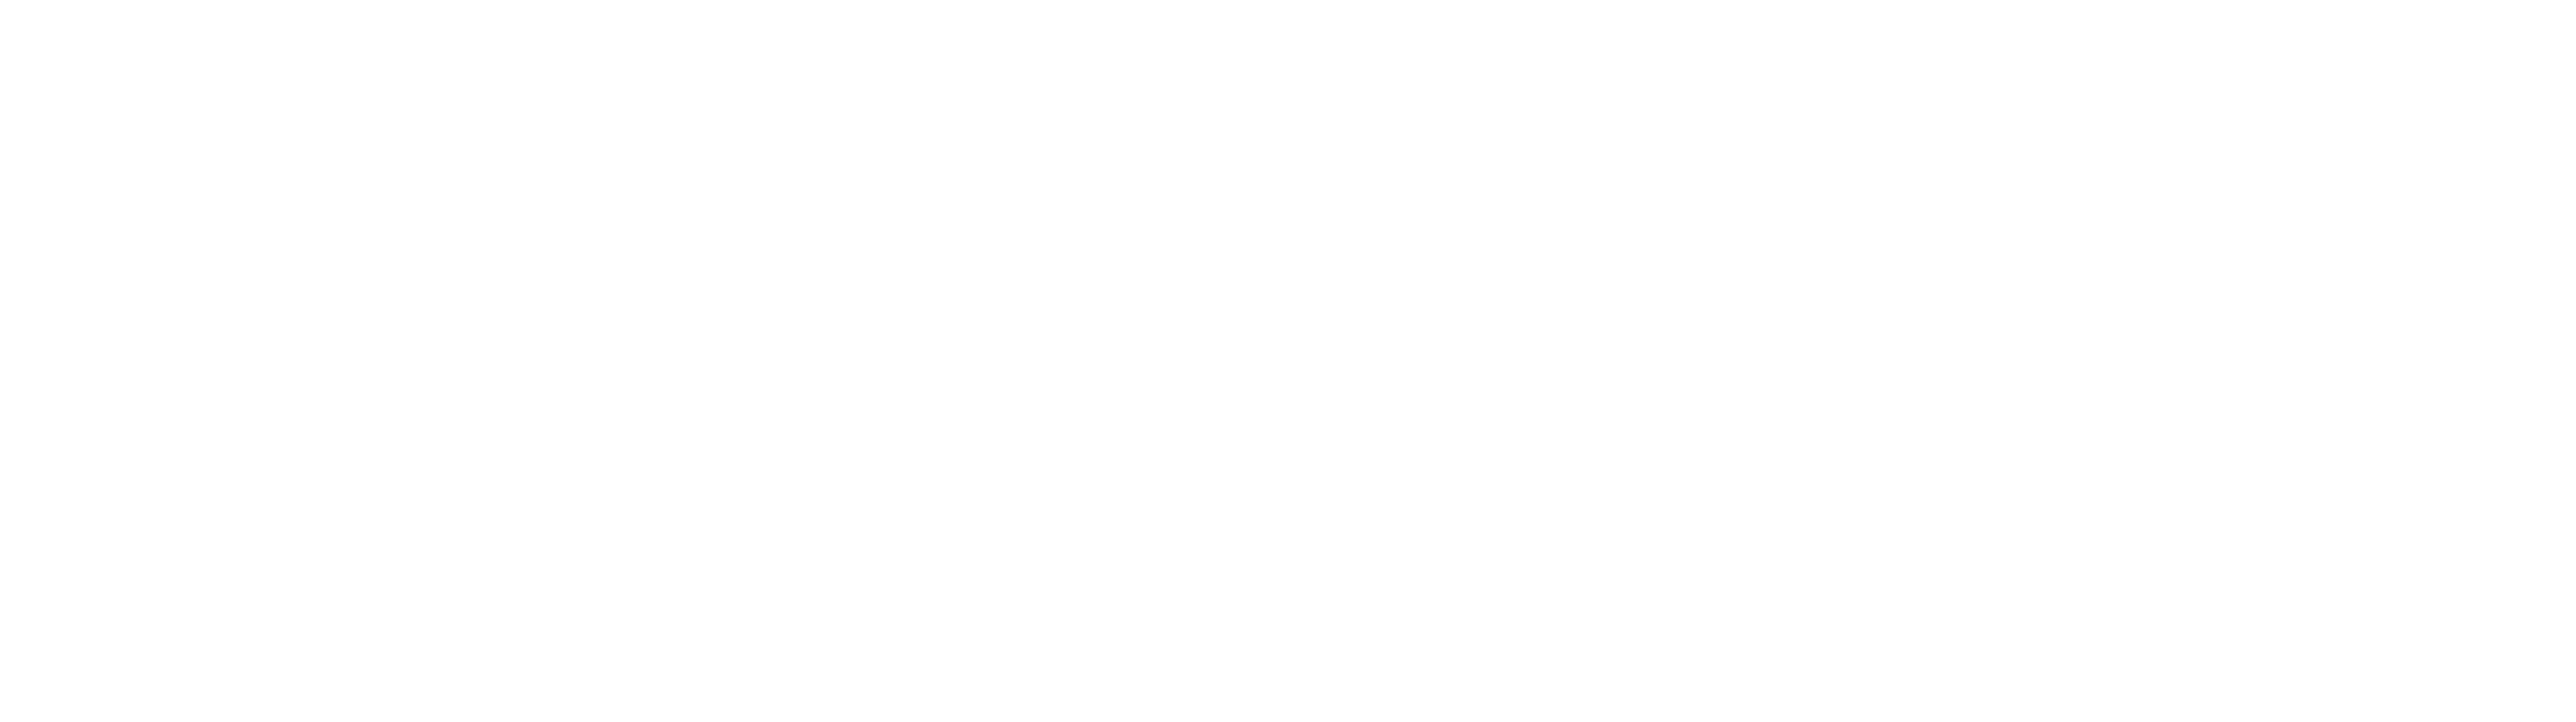 Castrum Social